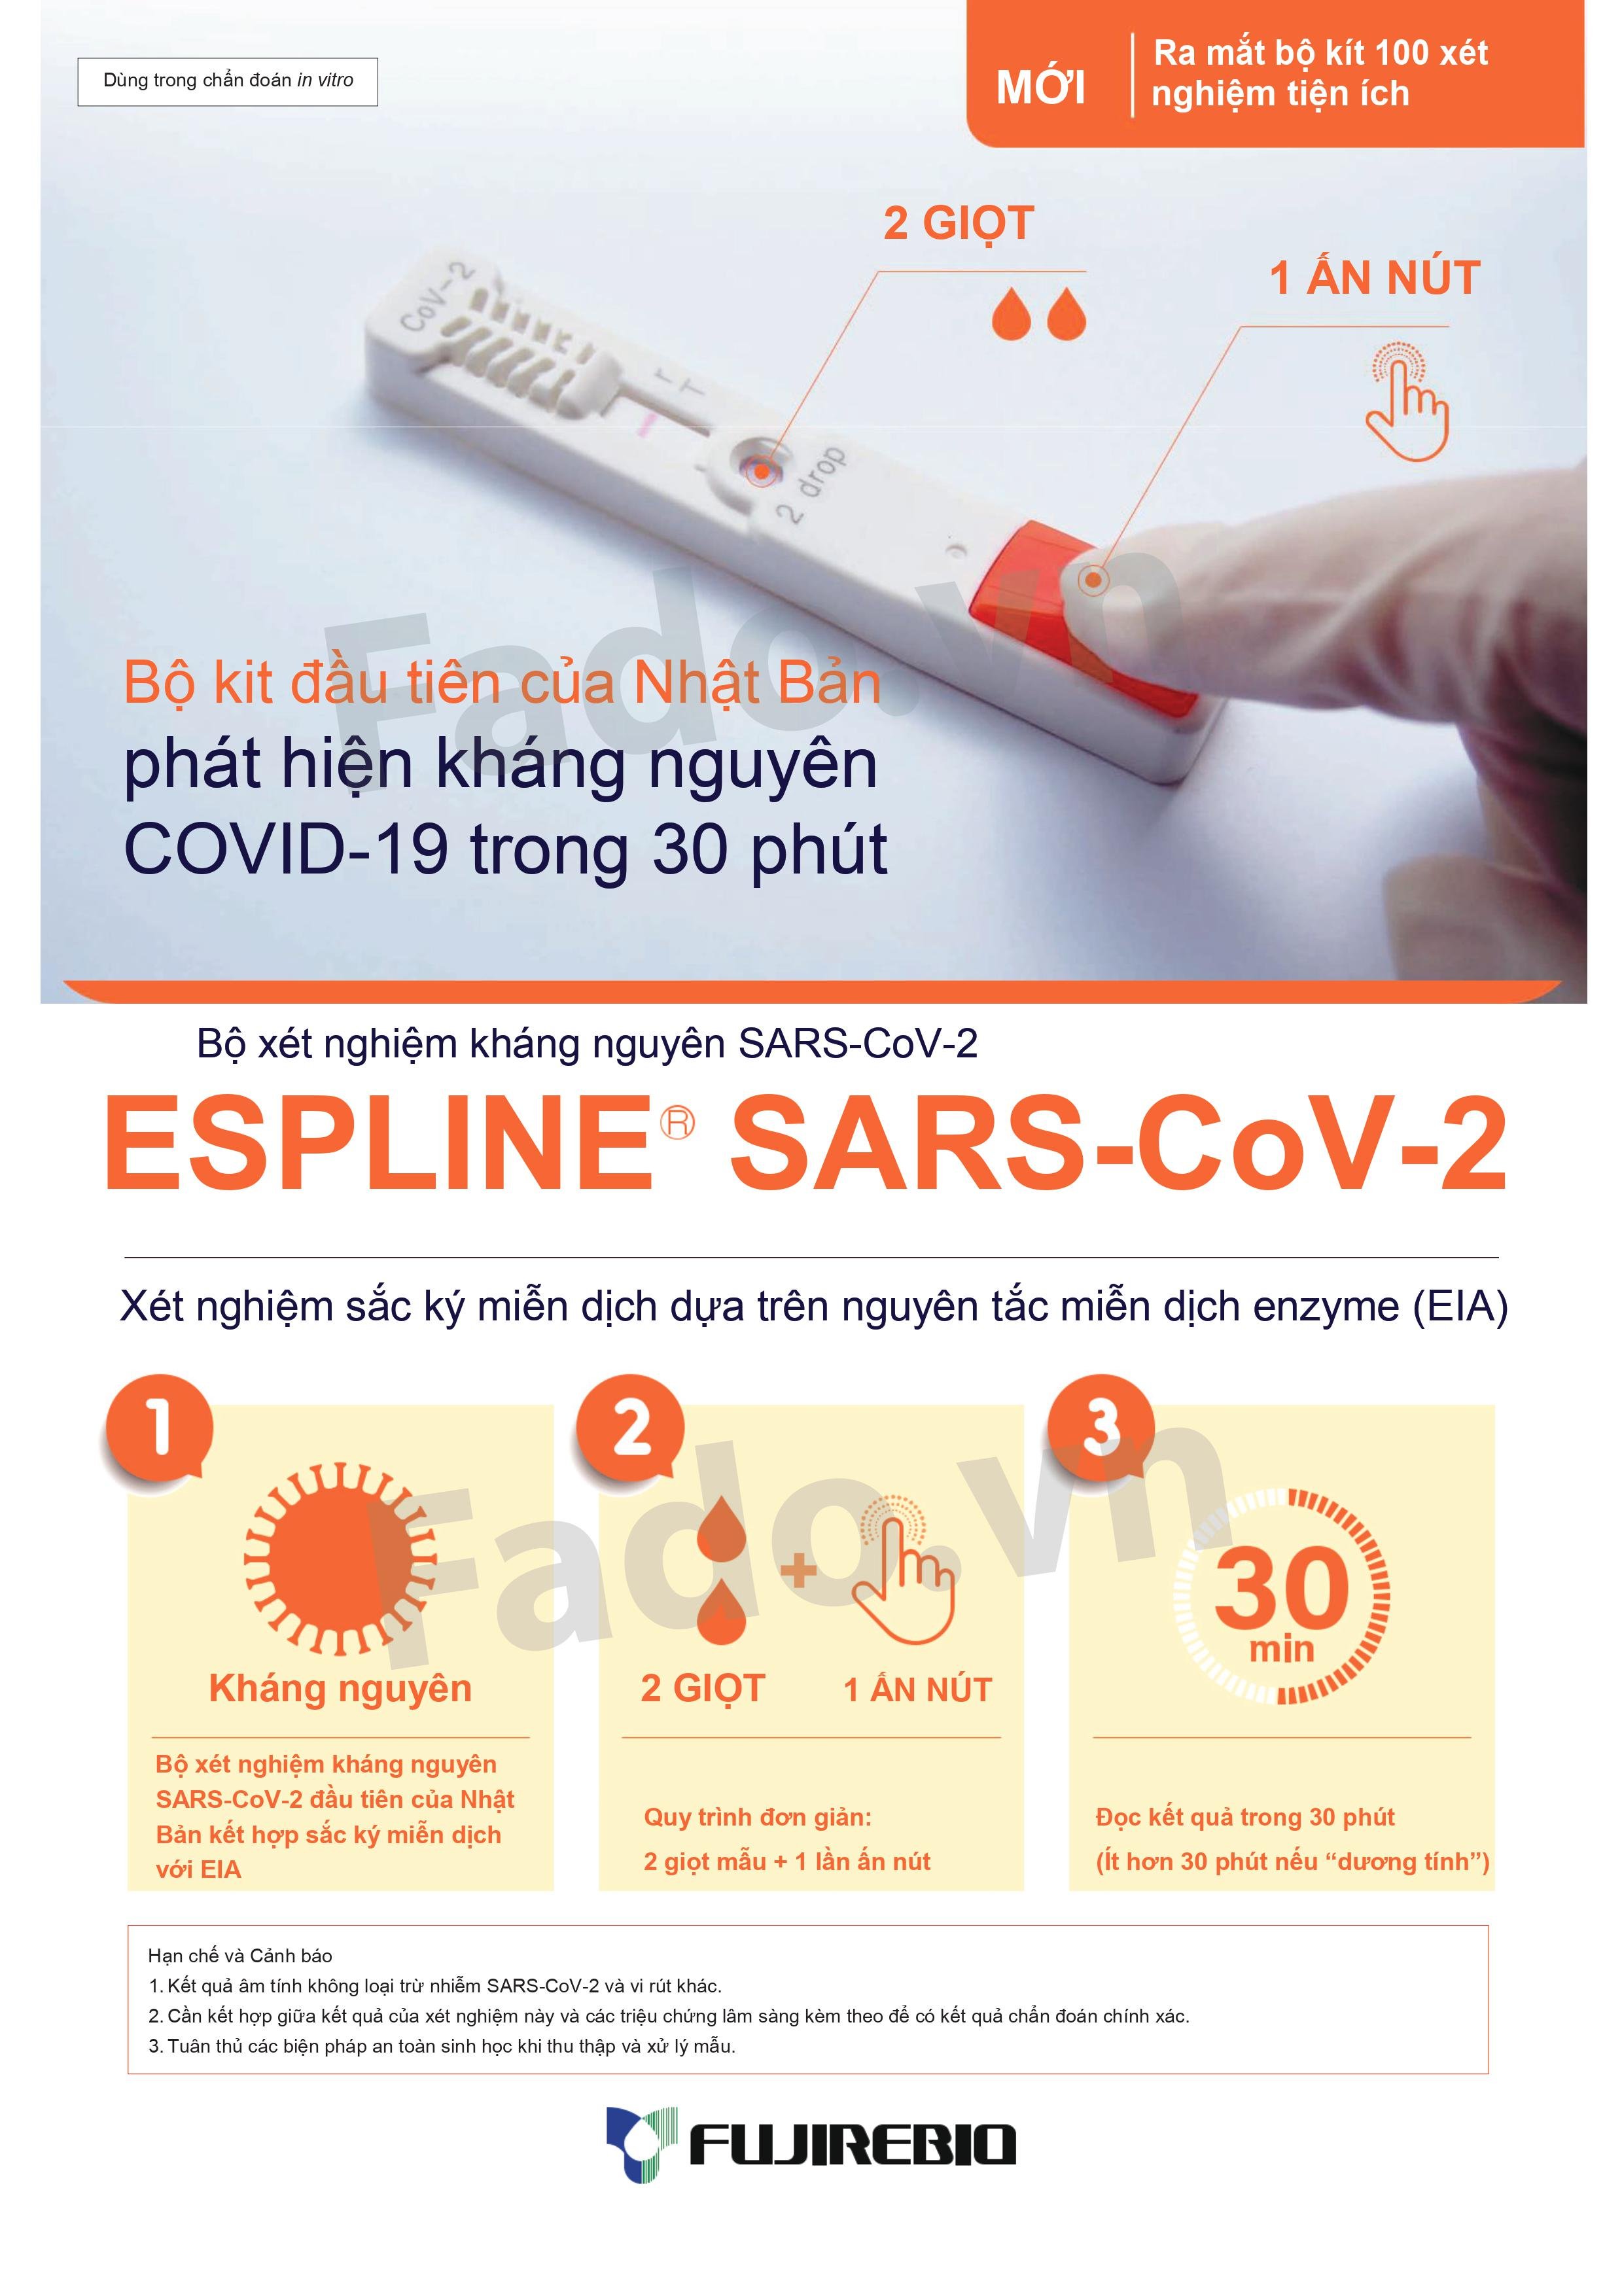 HÀNG CÓ SẴN - Combo 30 - Kit xét nghiệm kháng nguyên ESPLINE SARS-CoV-2 - Dựa trên nguyên tắc miễn dịch enzyme (EIA)